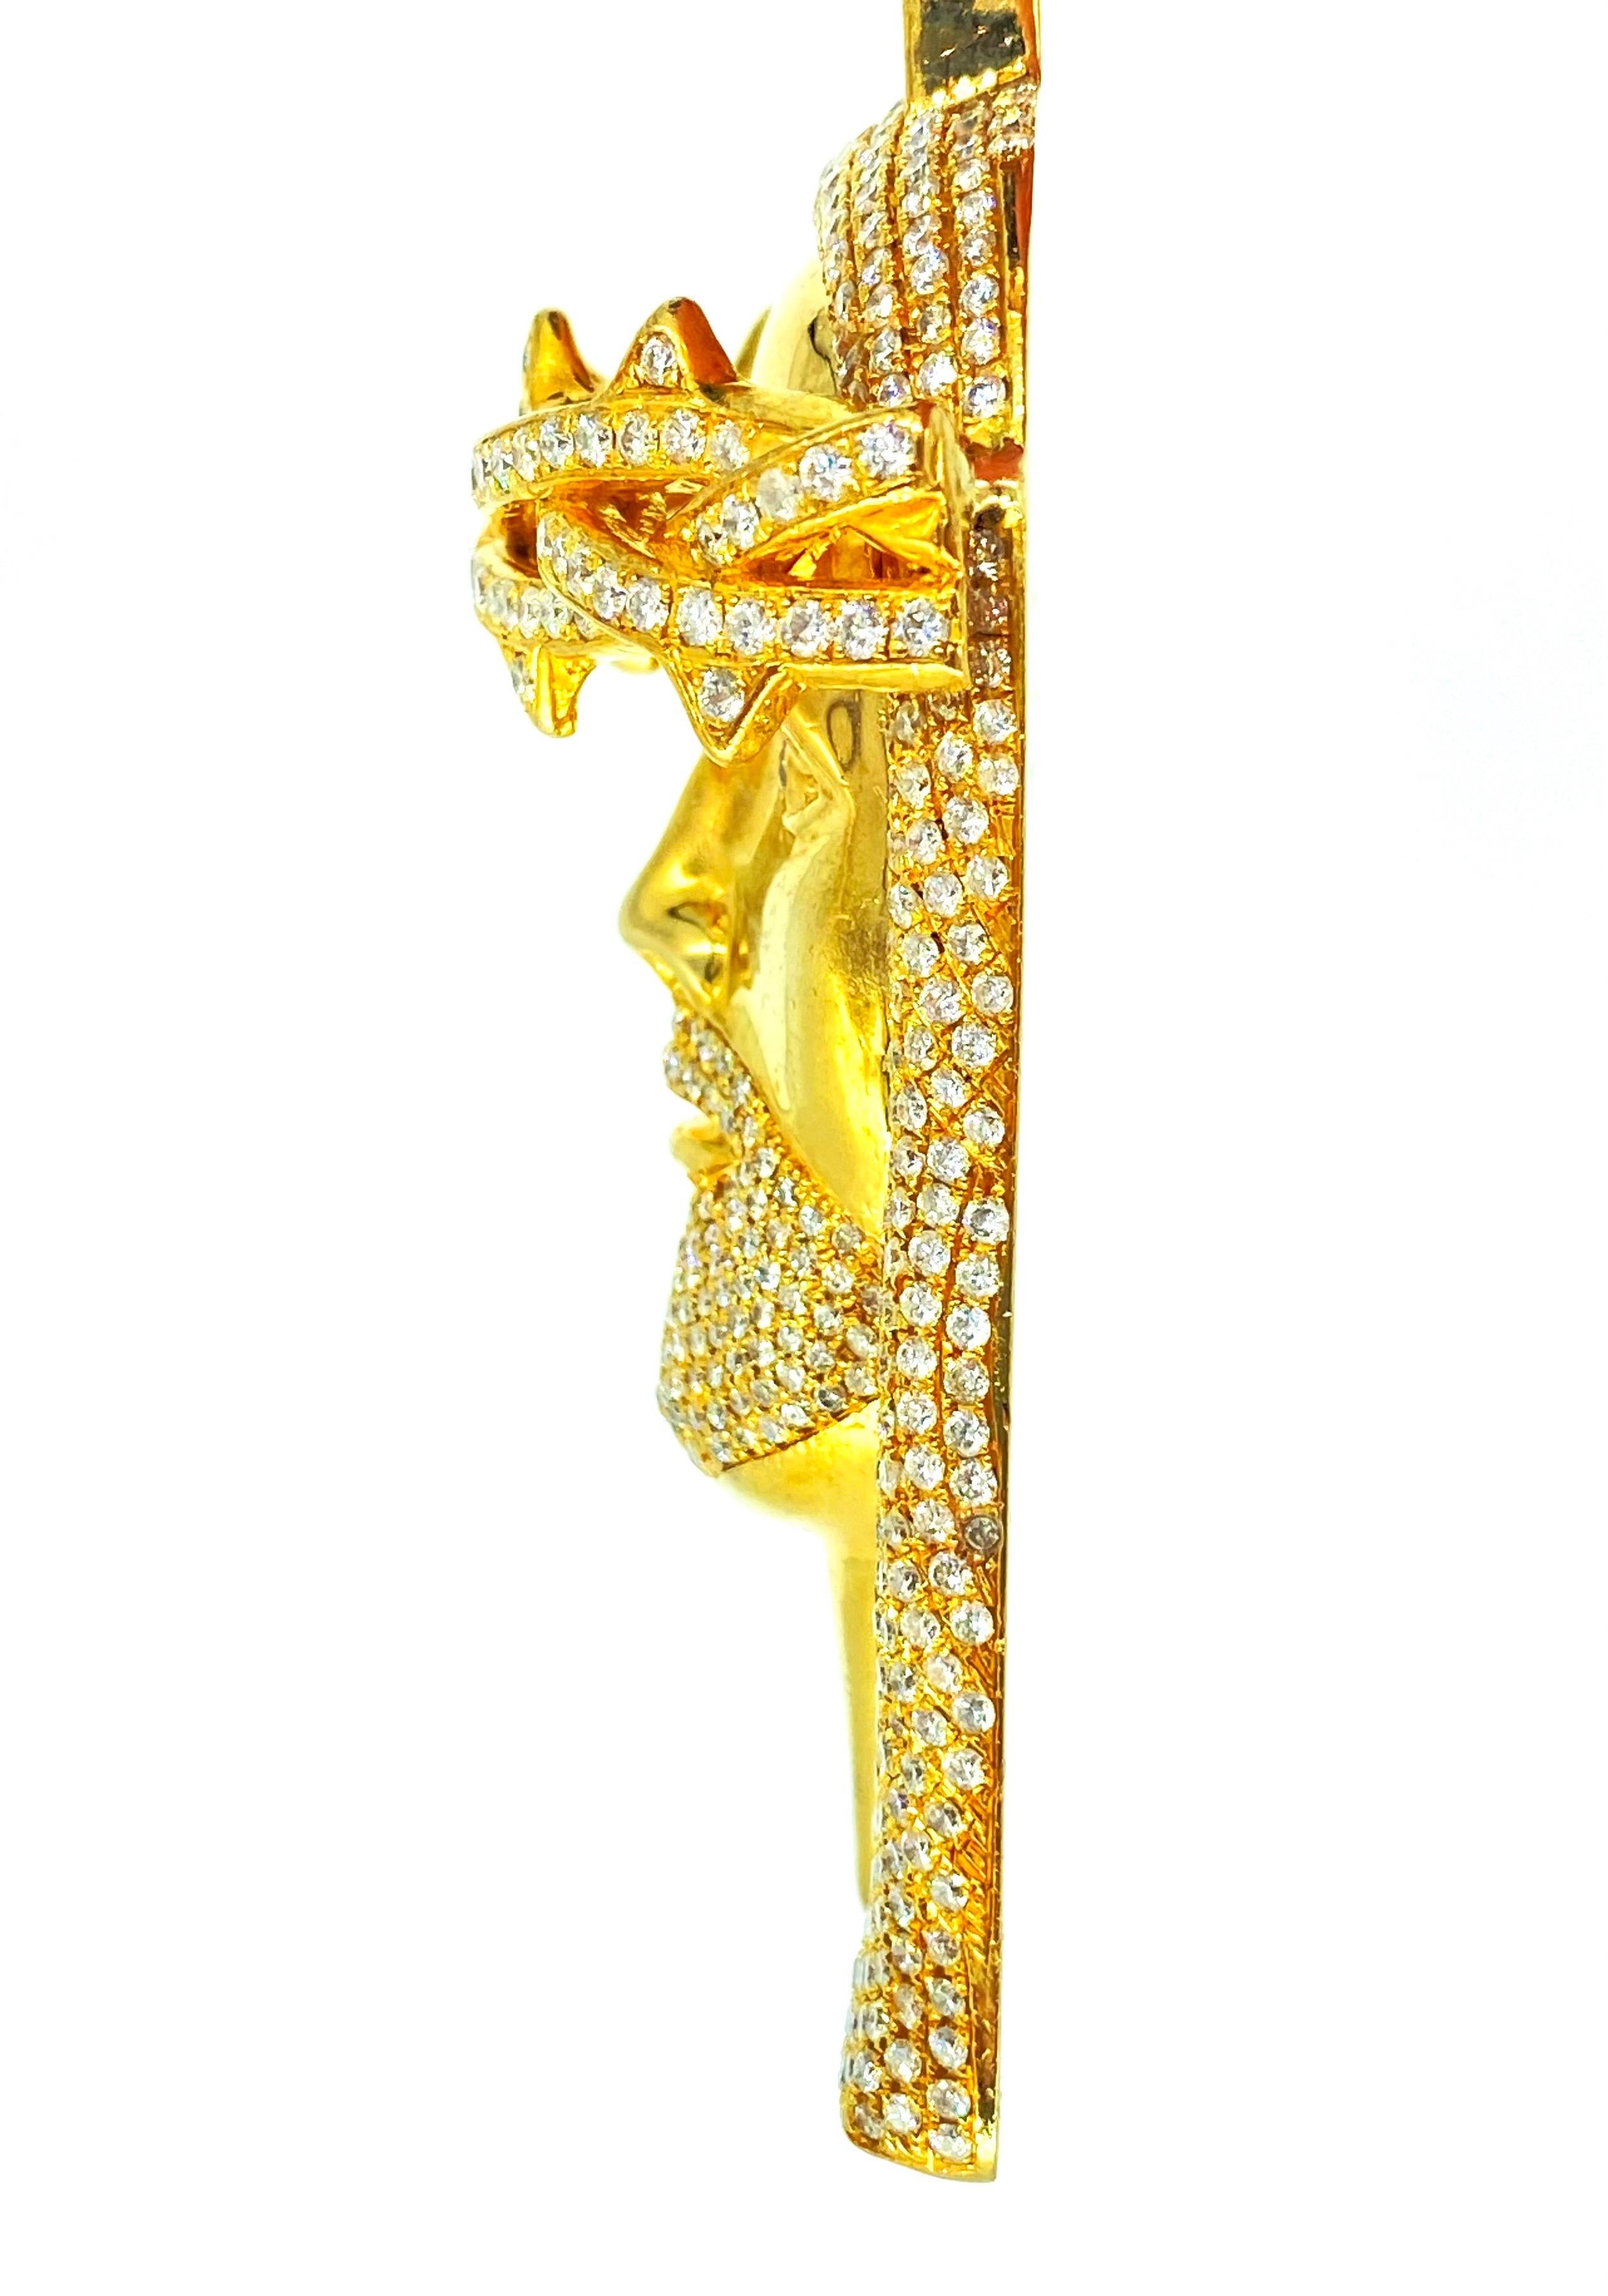 Pendentif Big Jesus Face 23.80 Carat Diamonds Heavy Solid Gold. Un travail artisanal très détaillé avec un modèle 3D qui le fait ressortir et briller beaucoup à la lumière. Le poids approximatif des diamants est de 23,80 carats de diamants de pureté